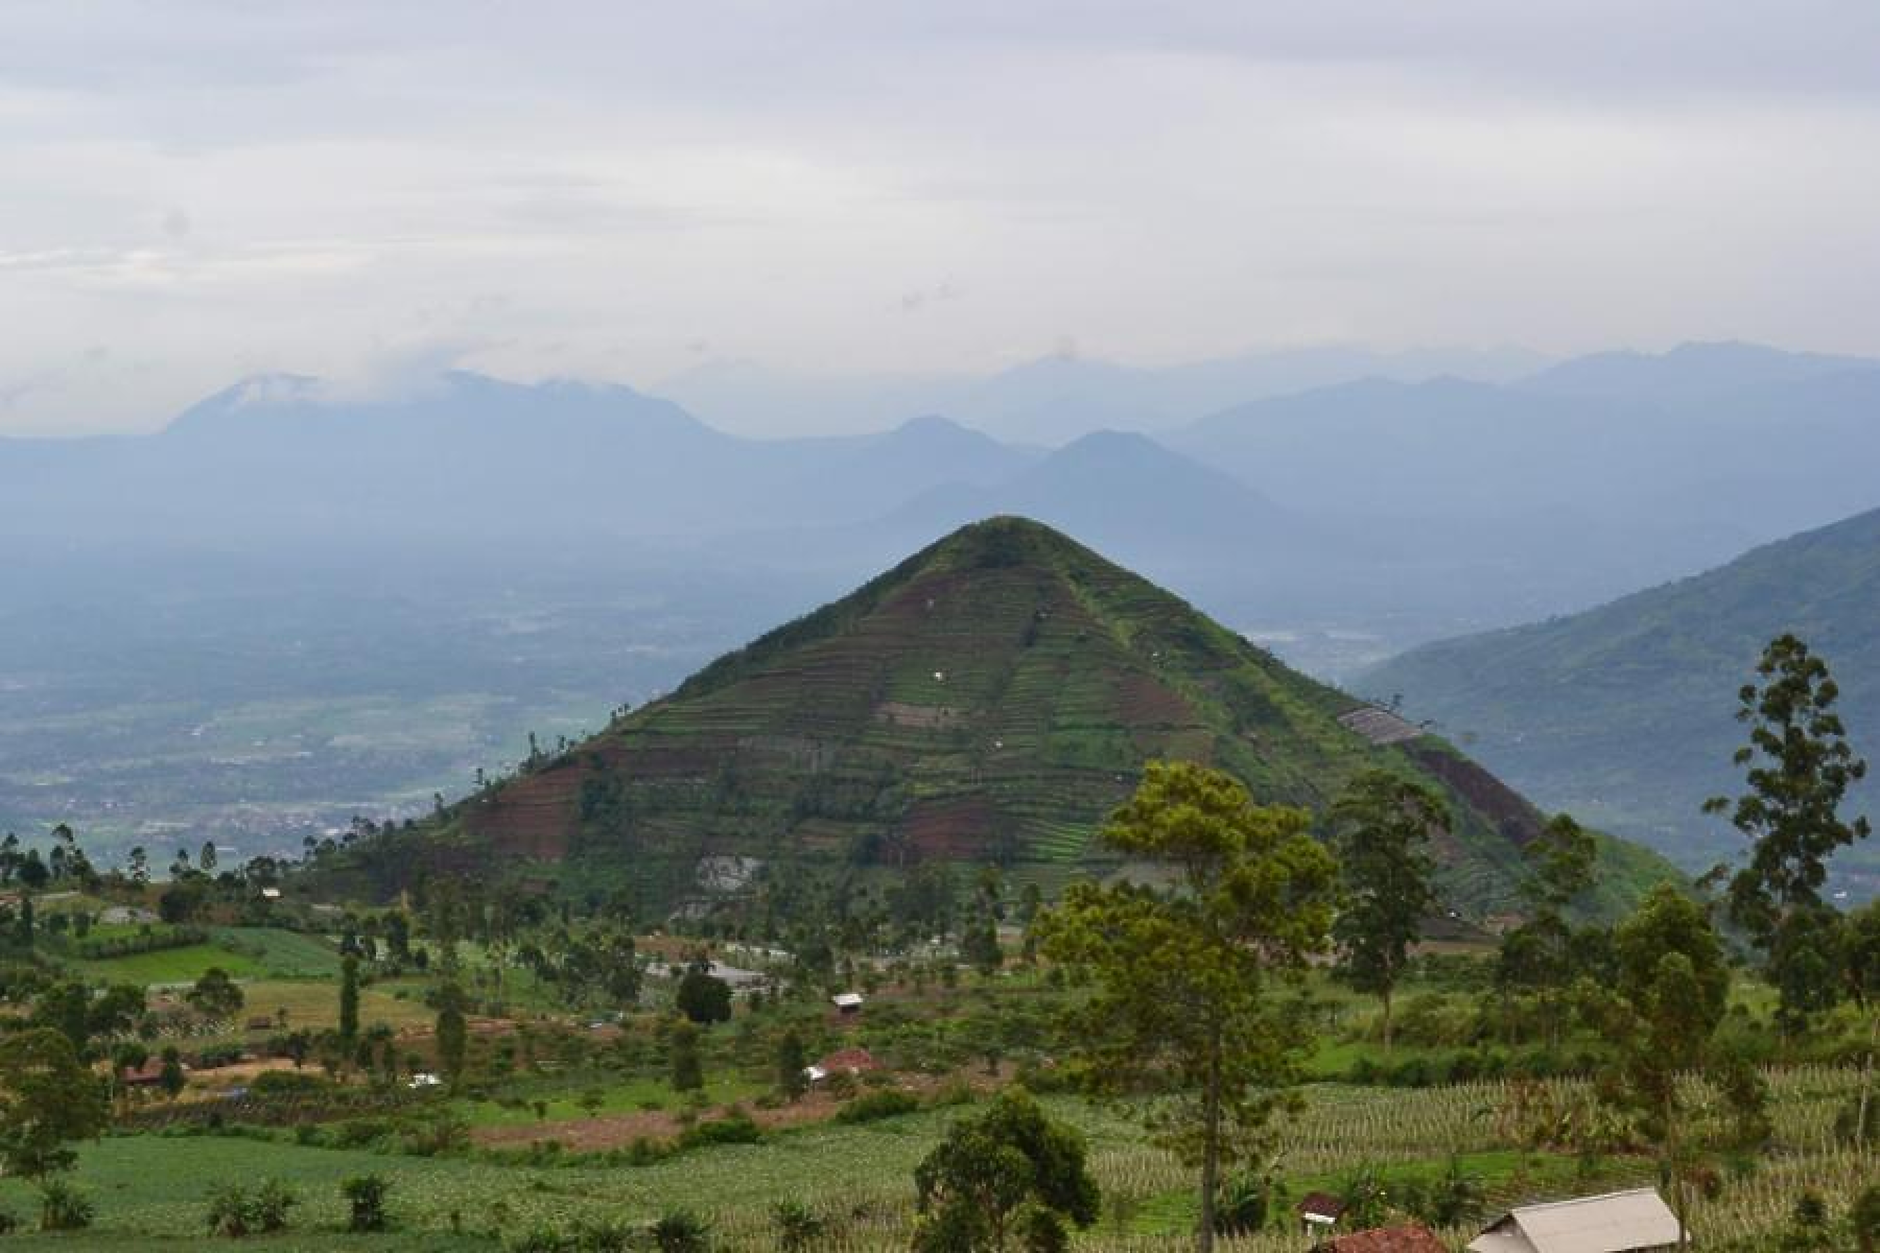 25 000-годишната пирамида Гунунг Паданг в Индонезия вероятно не е създадена от хора